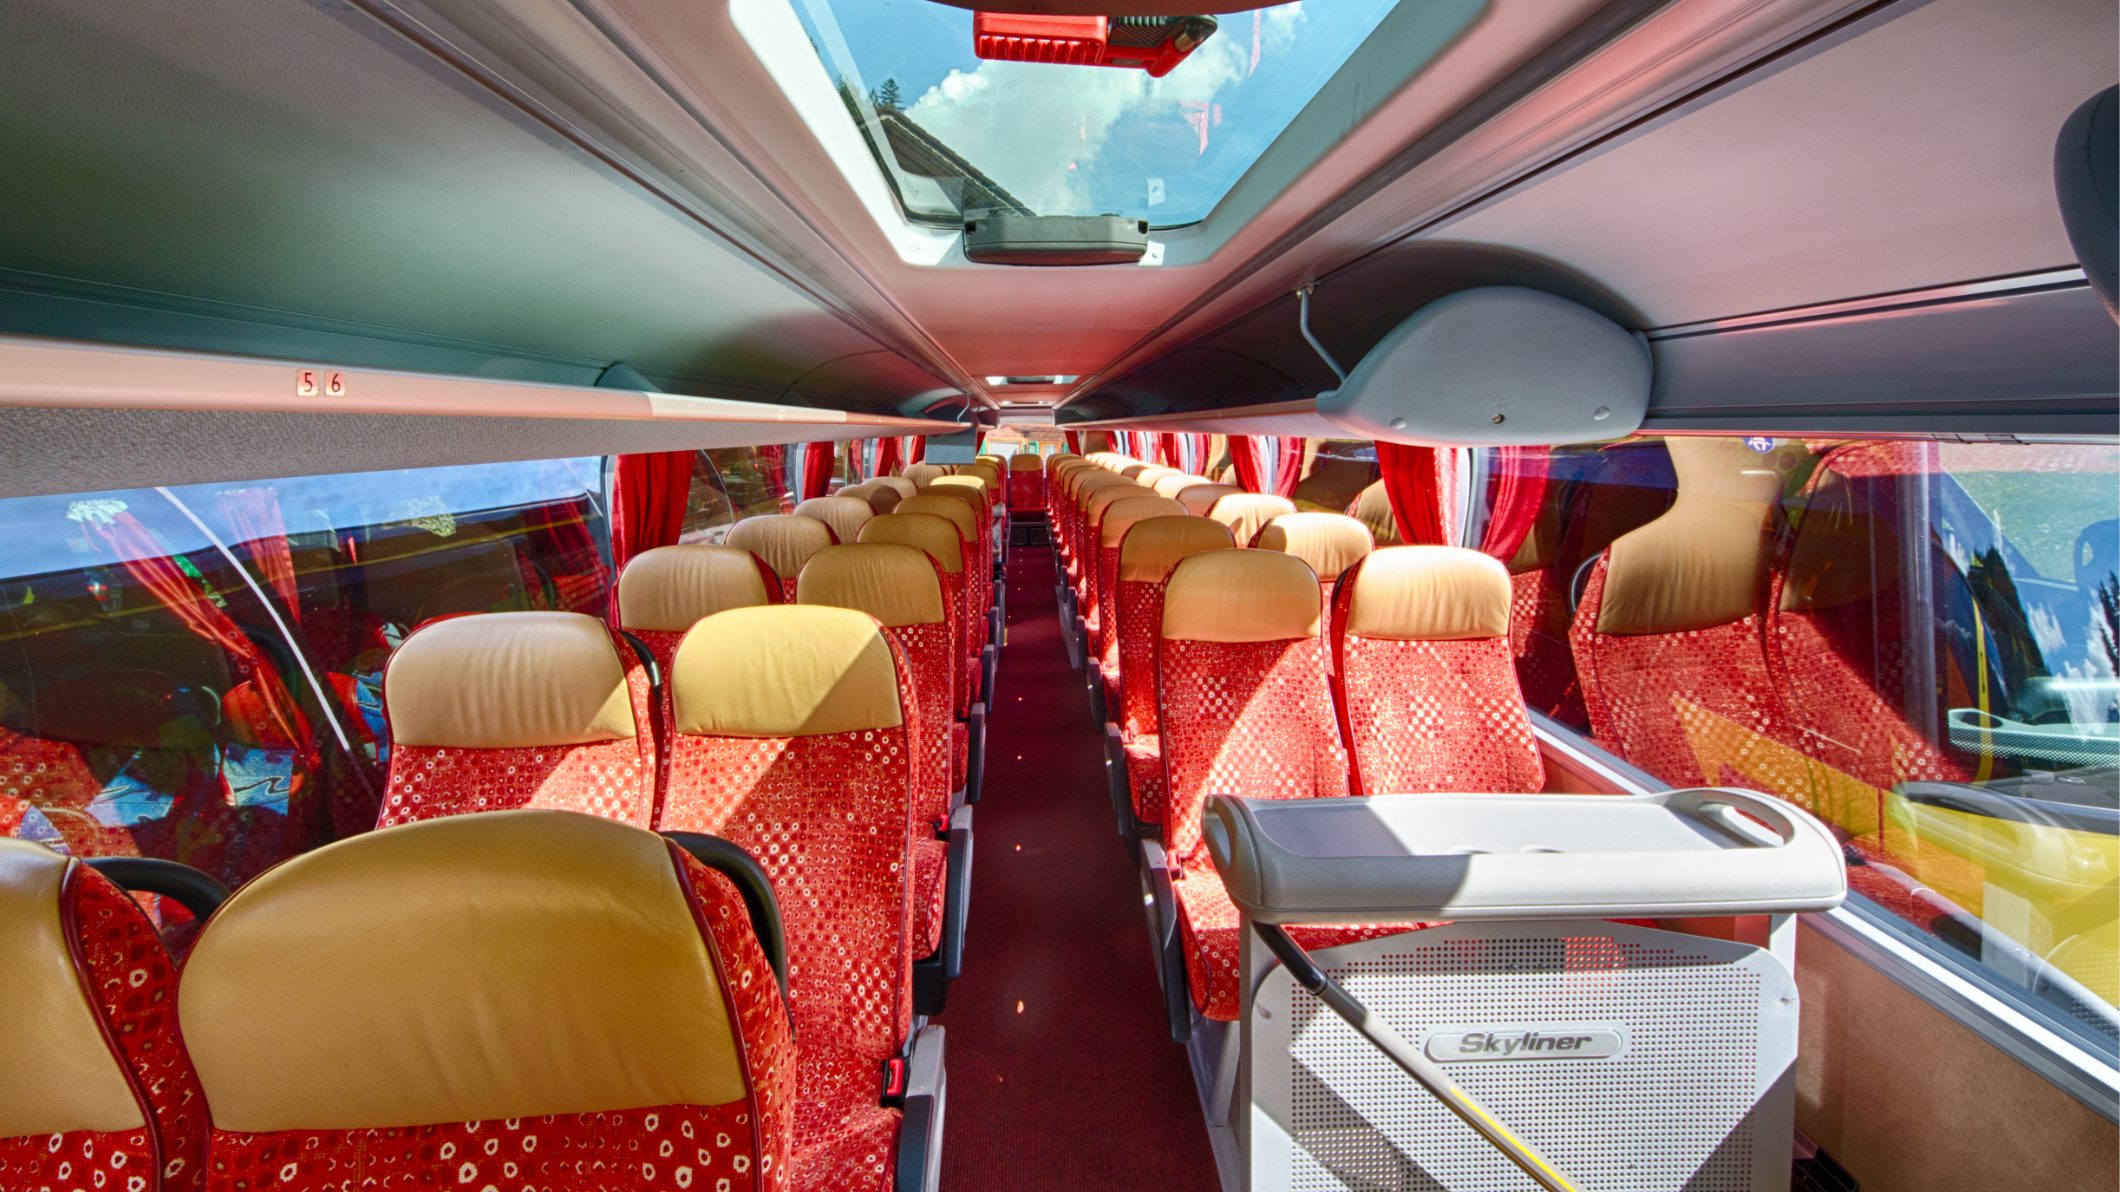 Das Interieur eines Reisecars von Neukomm für die Tagesmiete mit rotgelben Sitzen